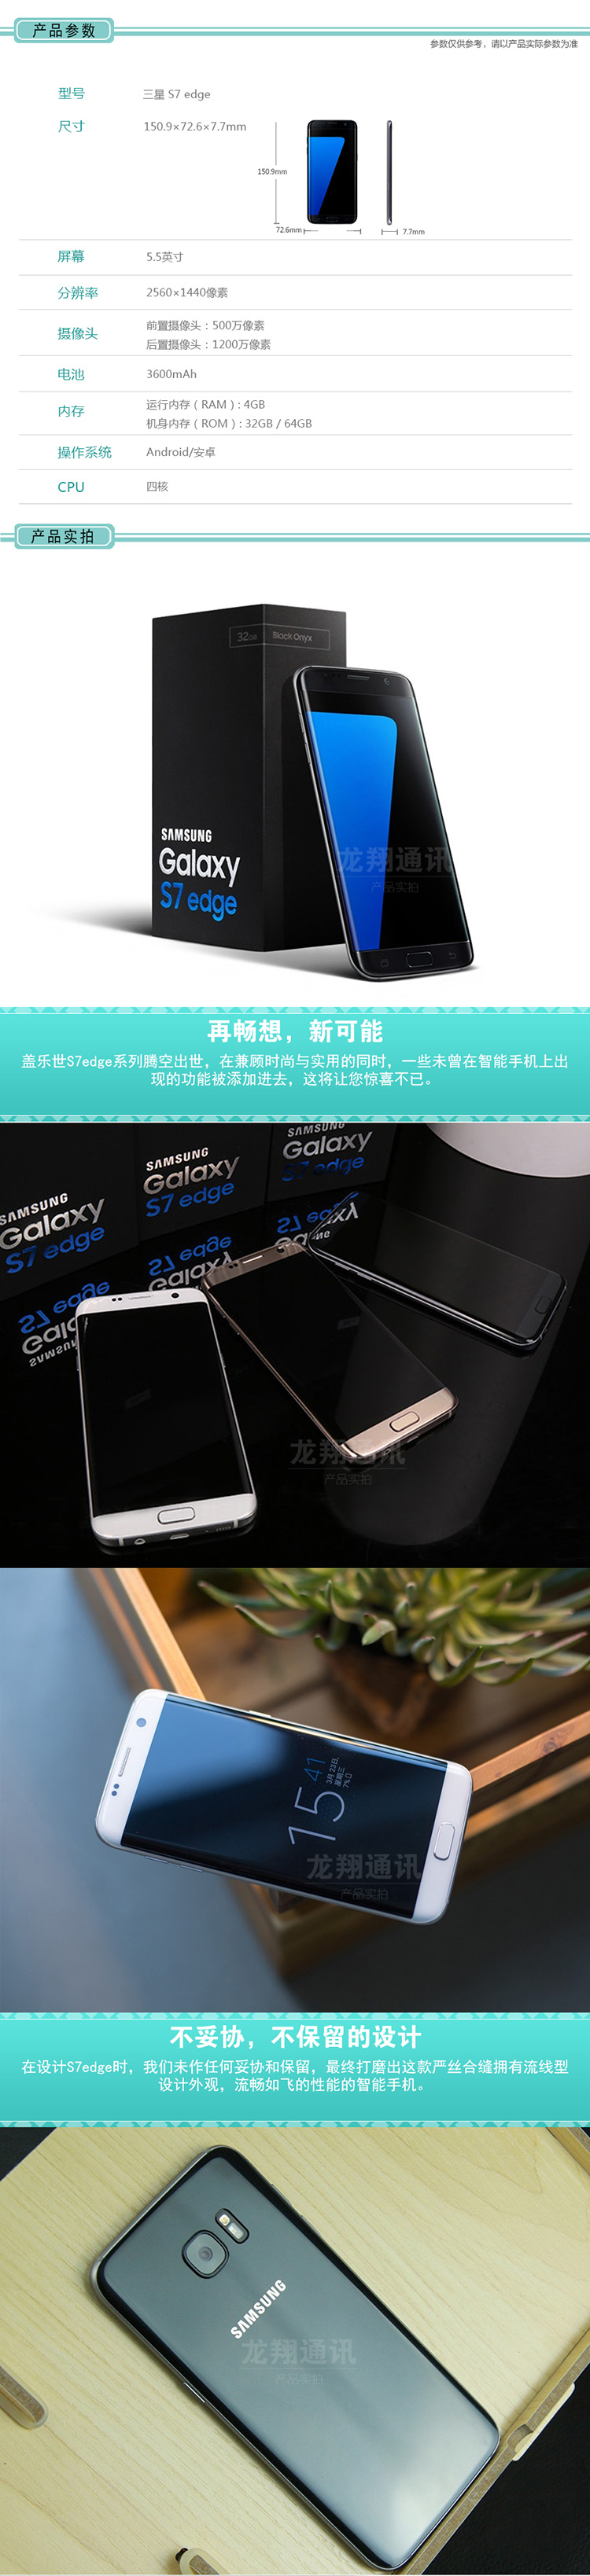 三星GALAXY S7 Edge G9350 32G 全网通 曲面侧屏 4G智能手机